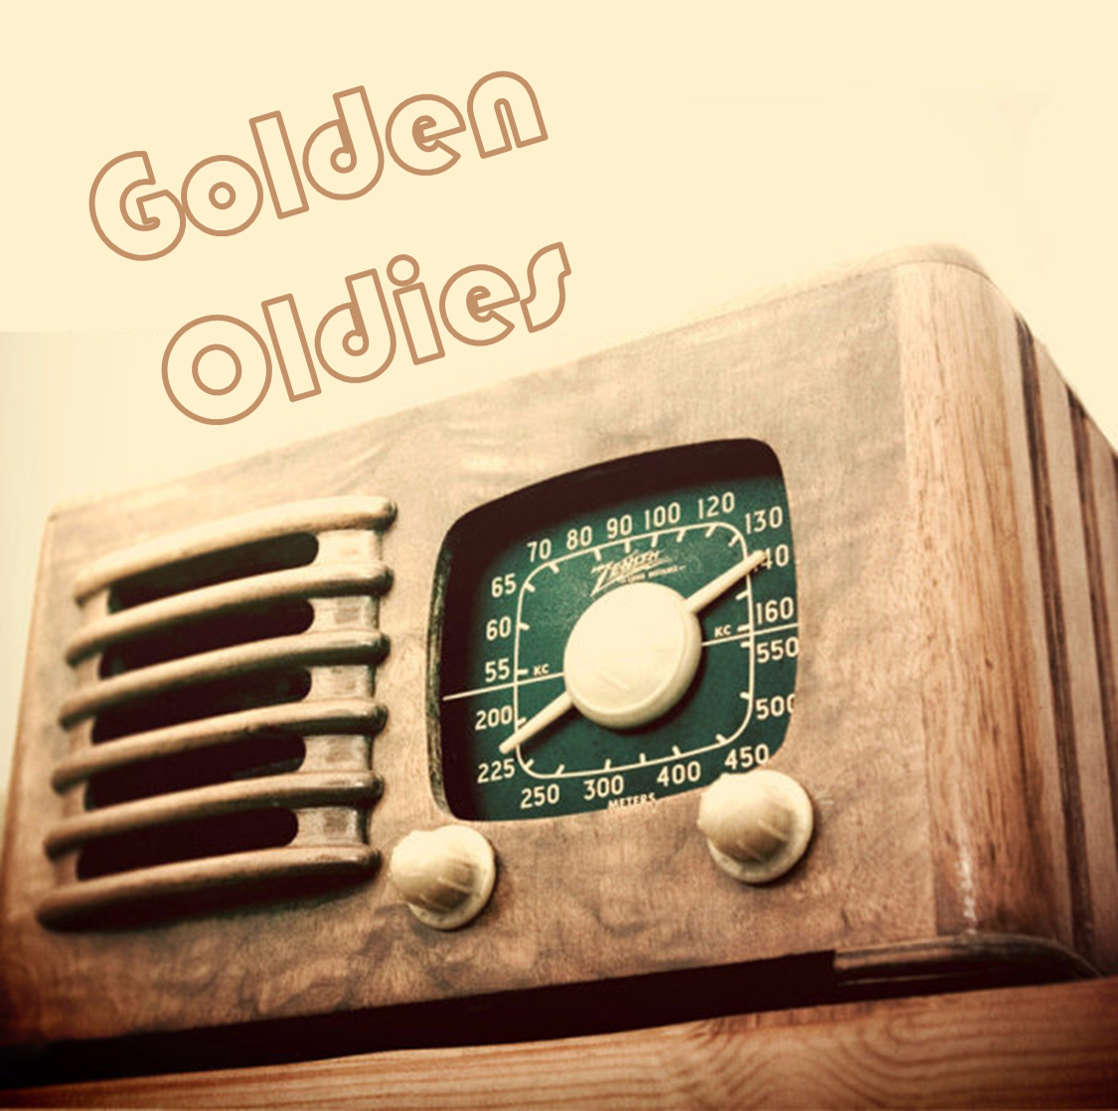 Golden oldies